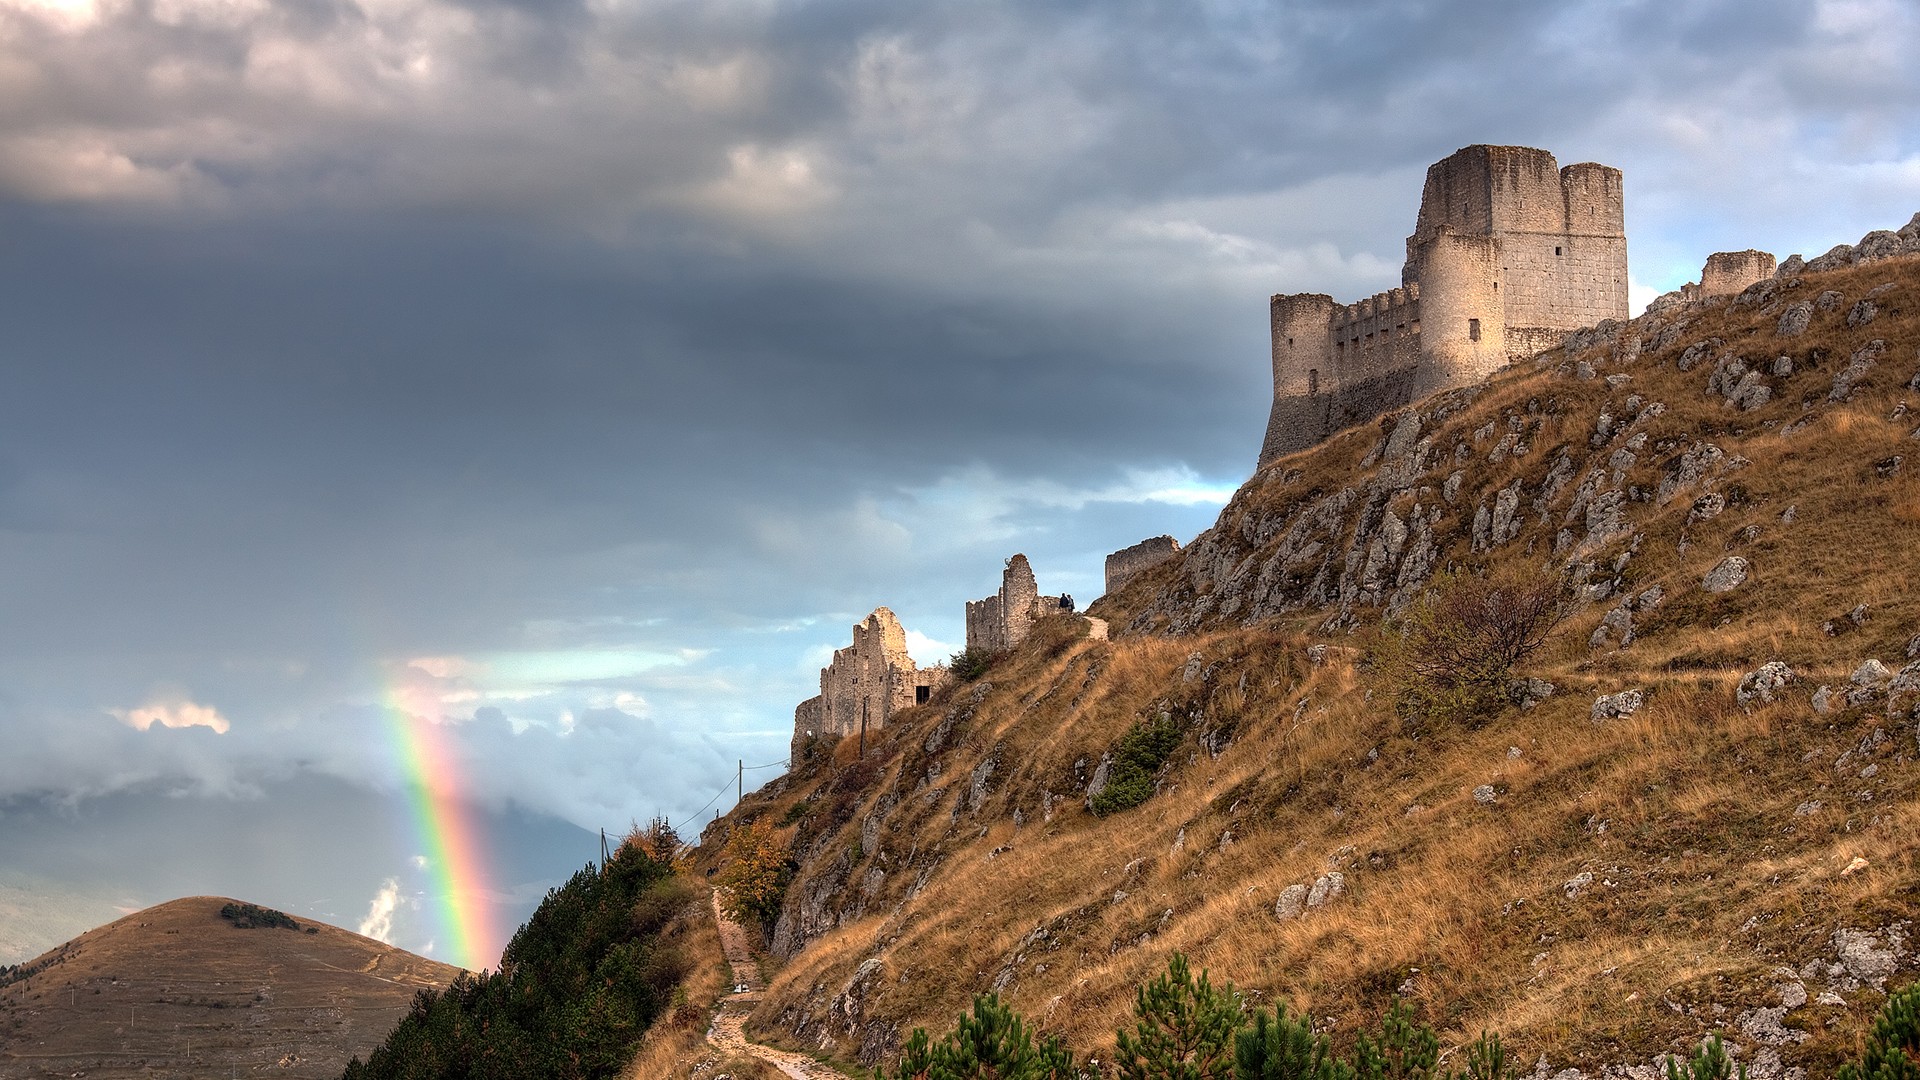 General 1920x1080 rainbows Rocca Calascio castle Italy rocks rock formation ruins outdoors sky